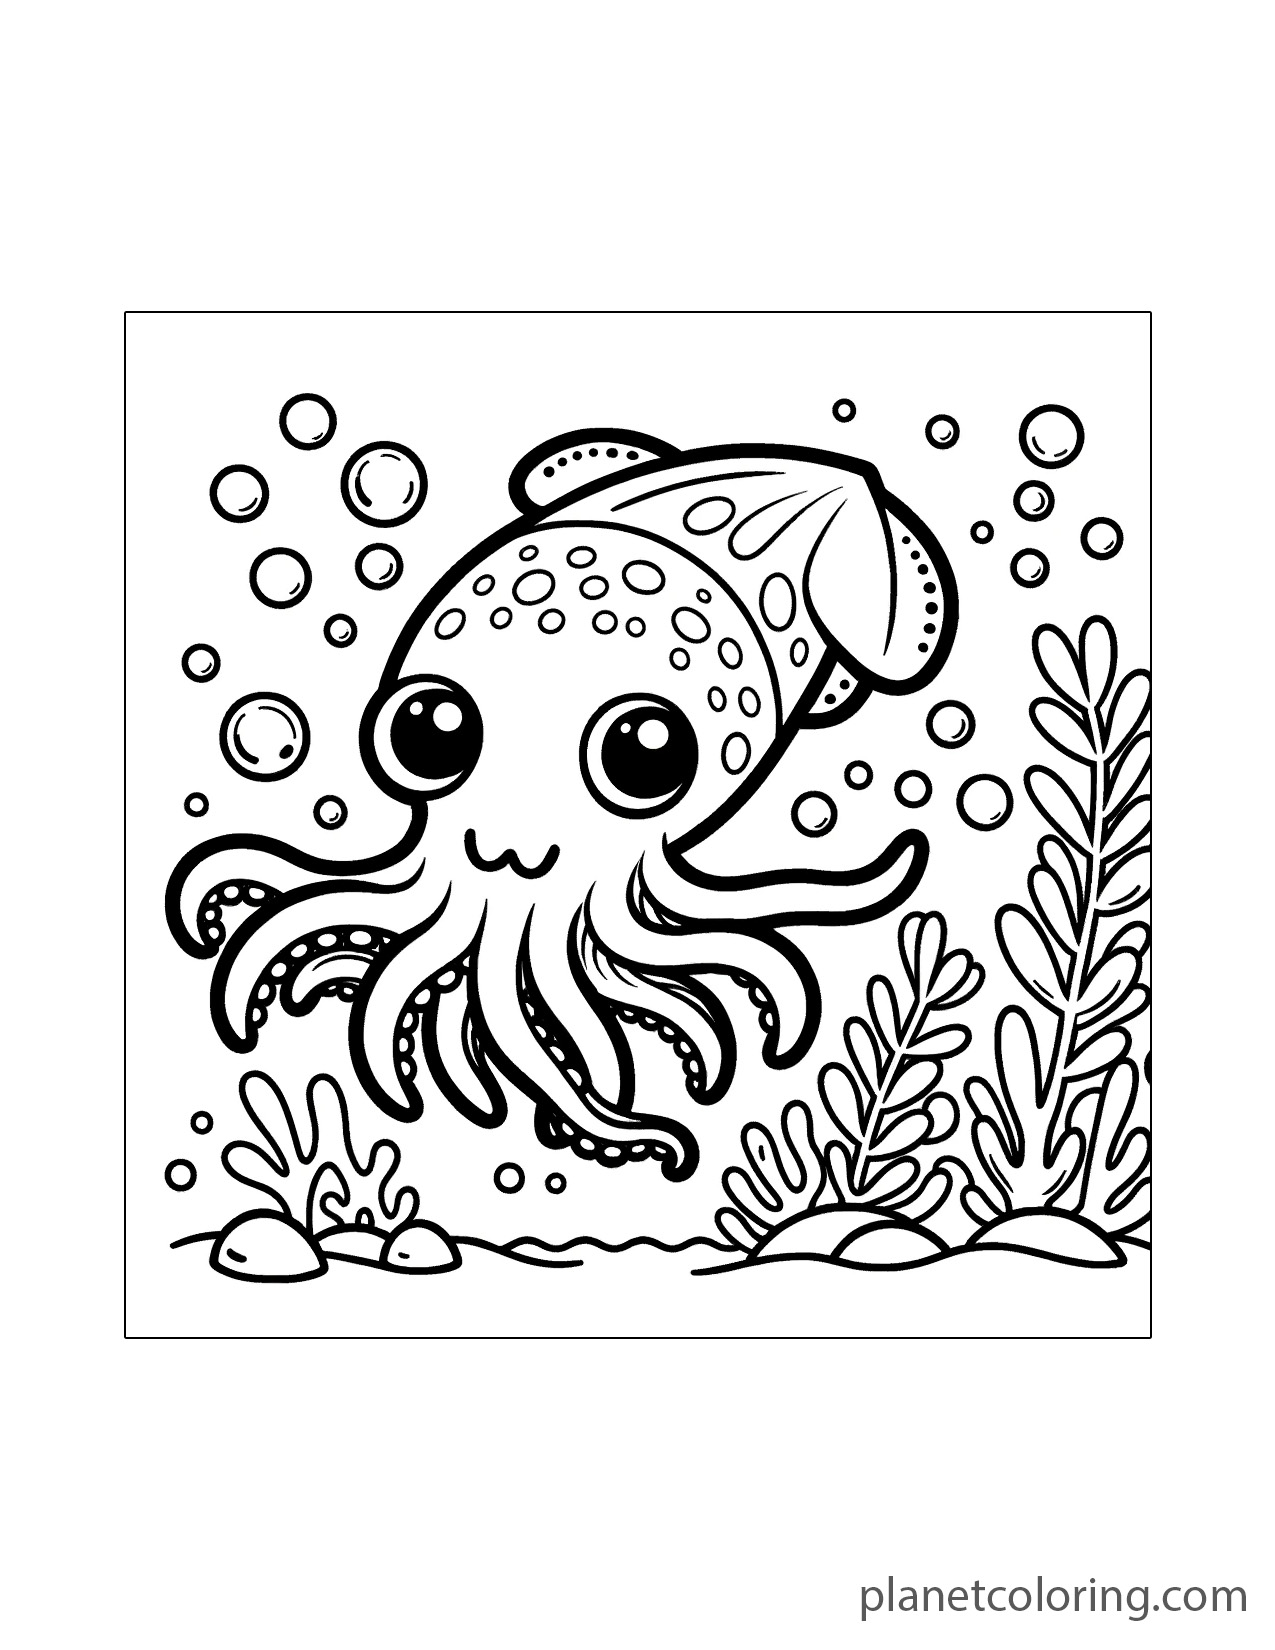 Underwater squid